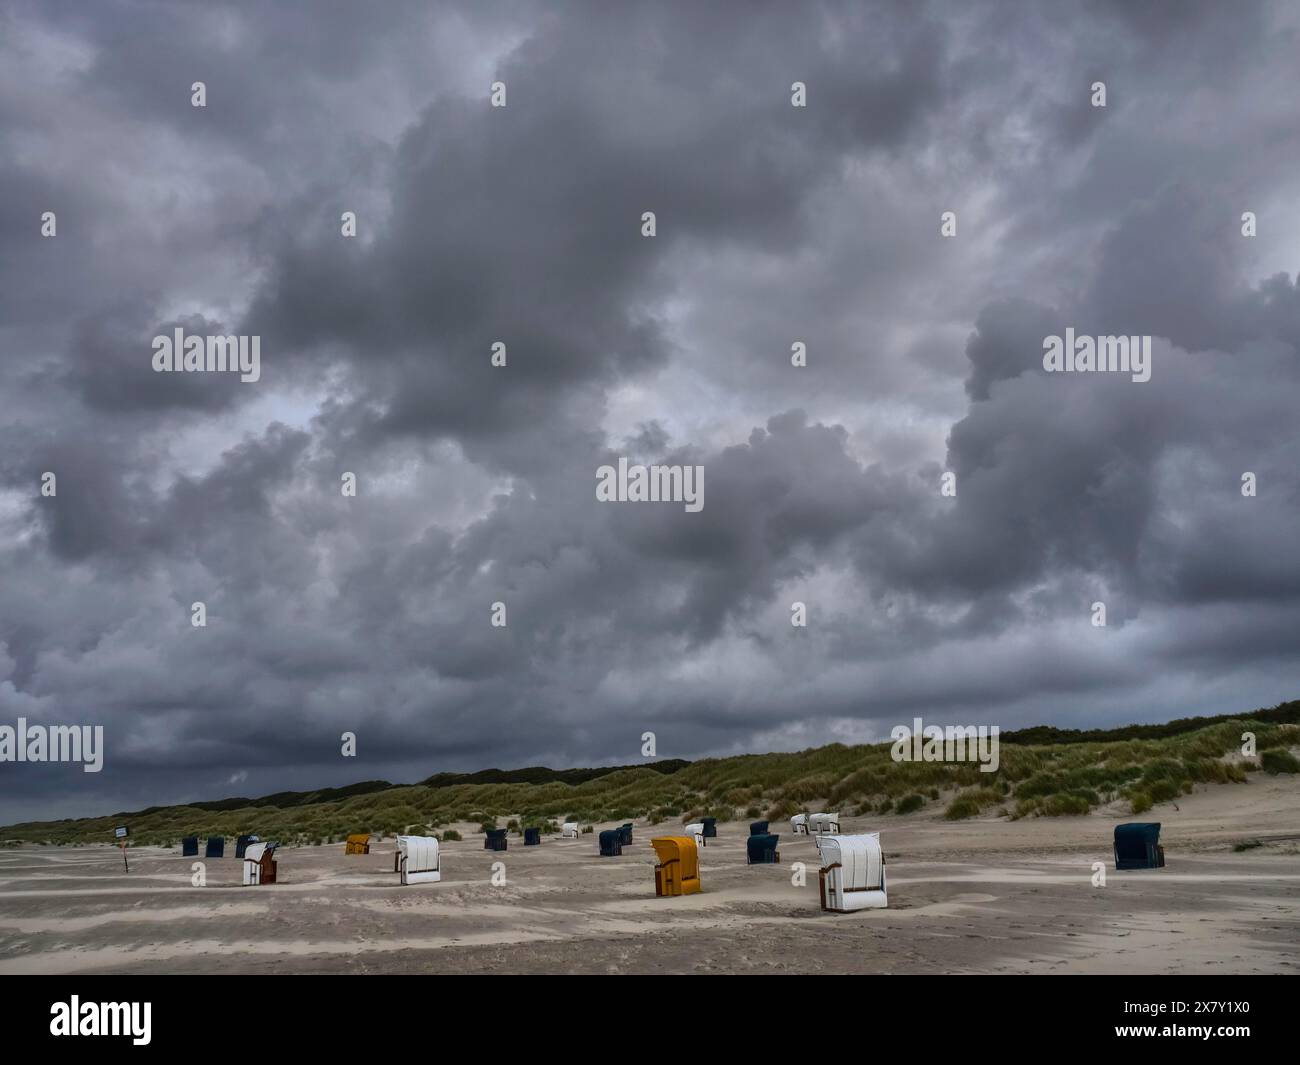 Dunkle Wolken ragen über einem grauen Strand mit verstreuten Liegen, bunten Liegen am Strand und in den Dünen unter bewölktem Himmel Stockfoto